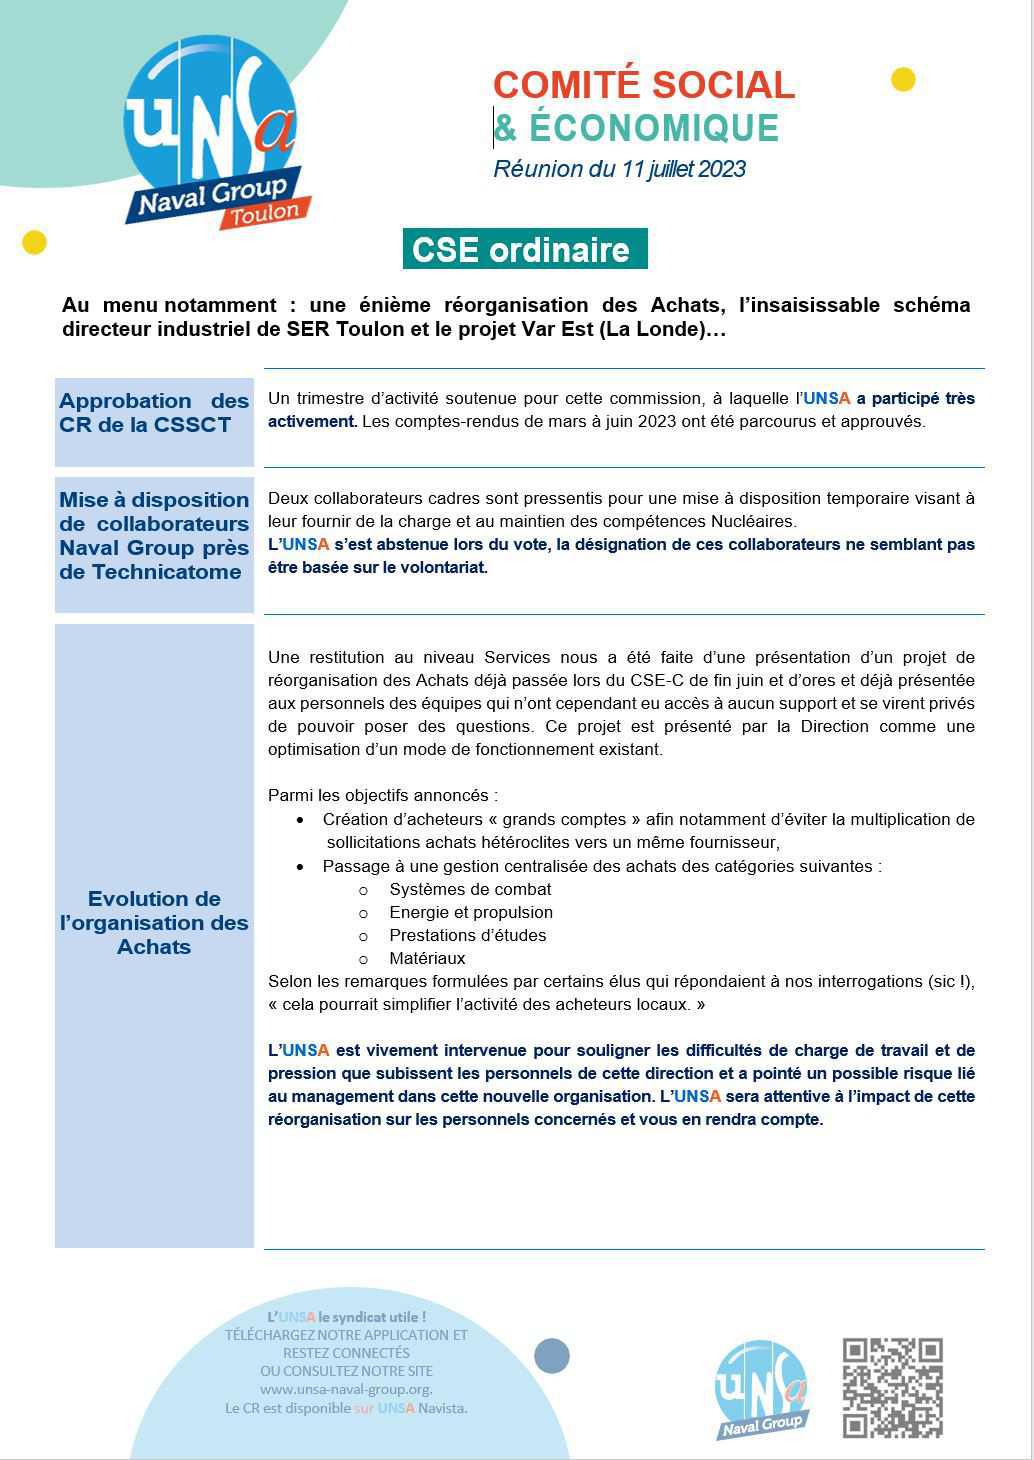 CSE de Toulon - Réunion du 11 juillet 2023 - Compte-rendu